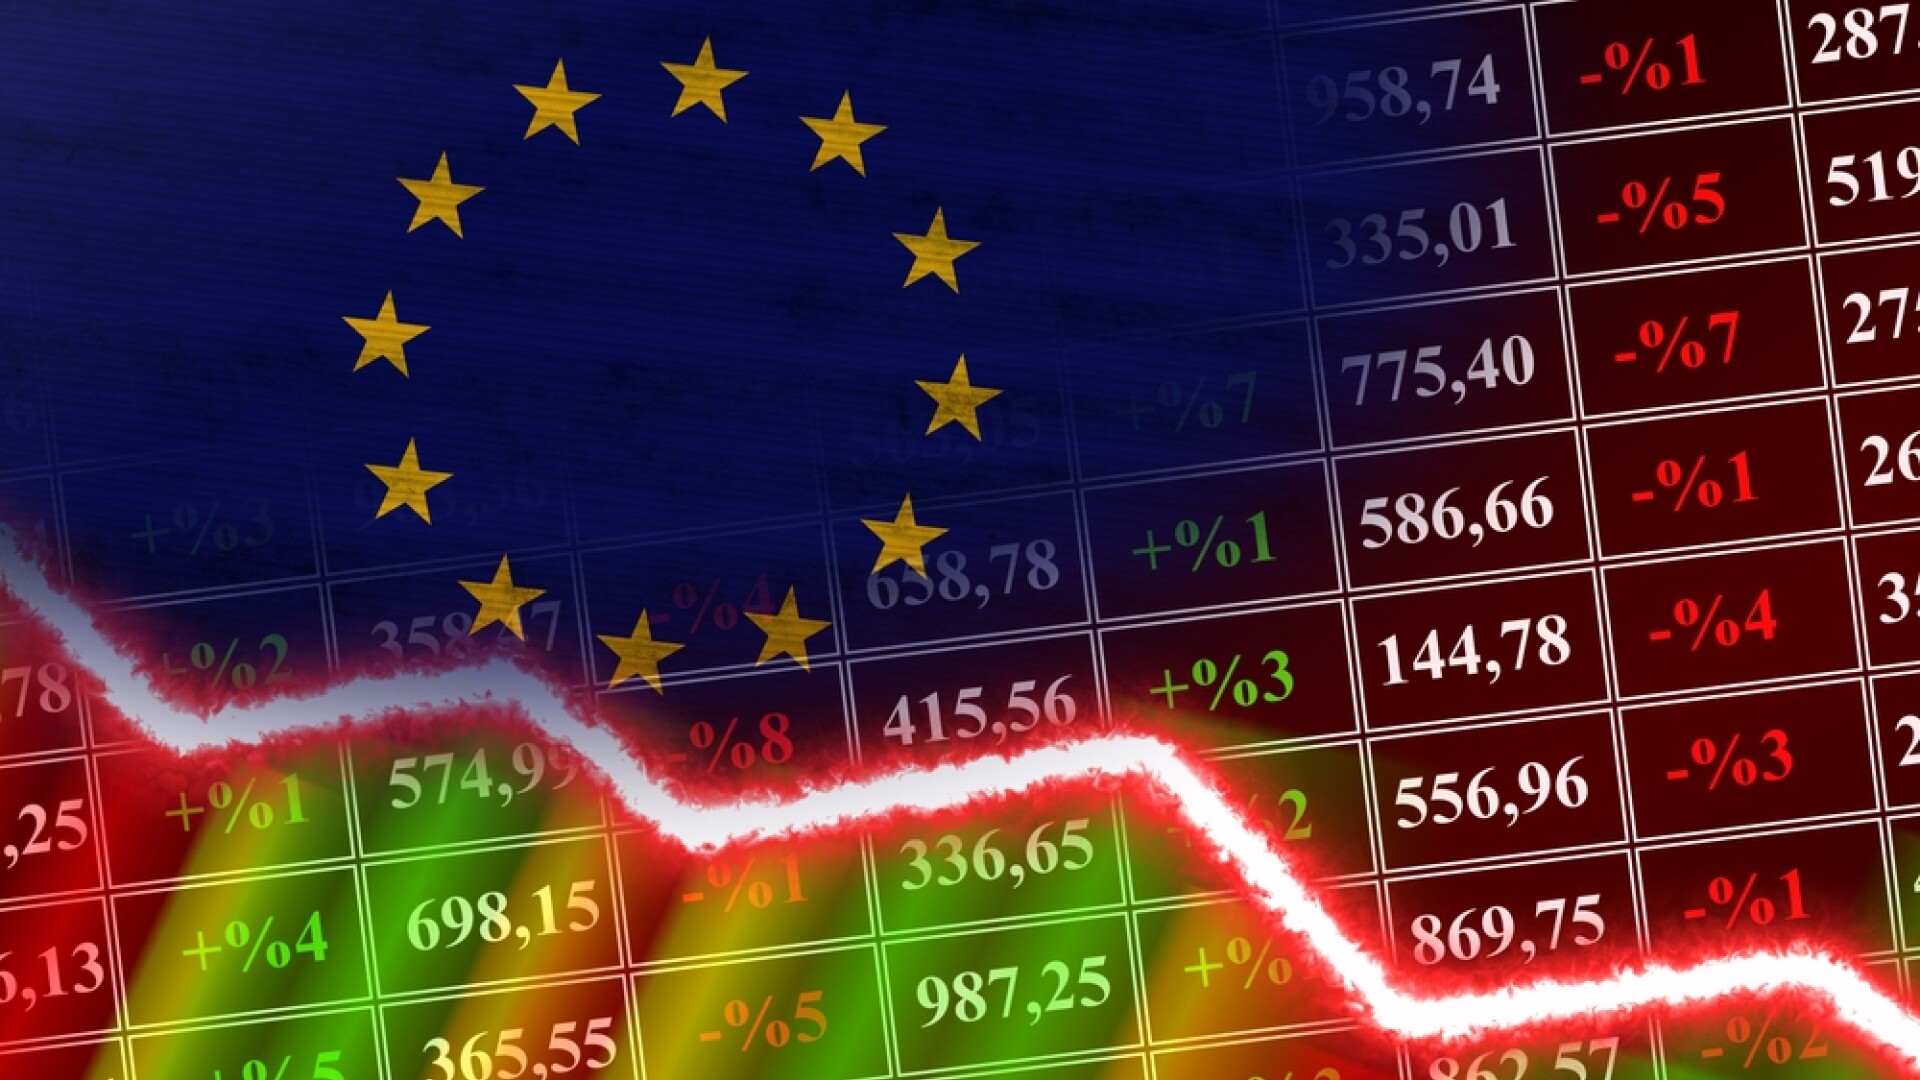 Bursele europene s-au prăbușit după un raport fals privind inflația din SUA. Investitorii s-au panicat